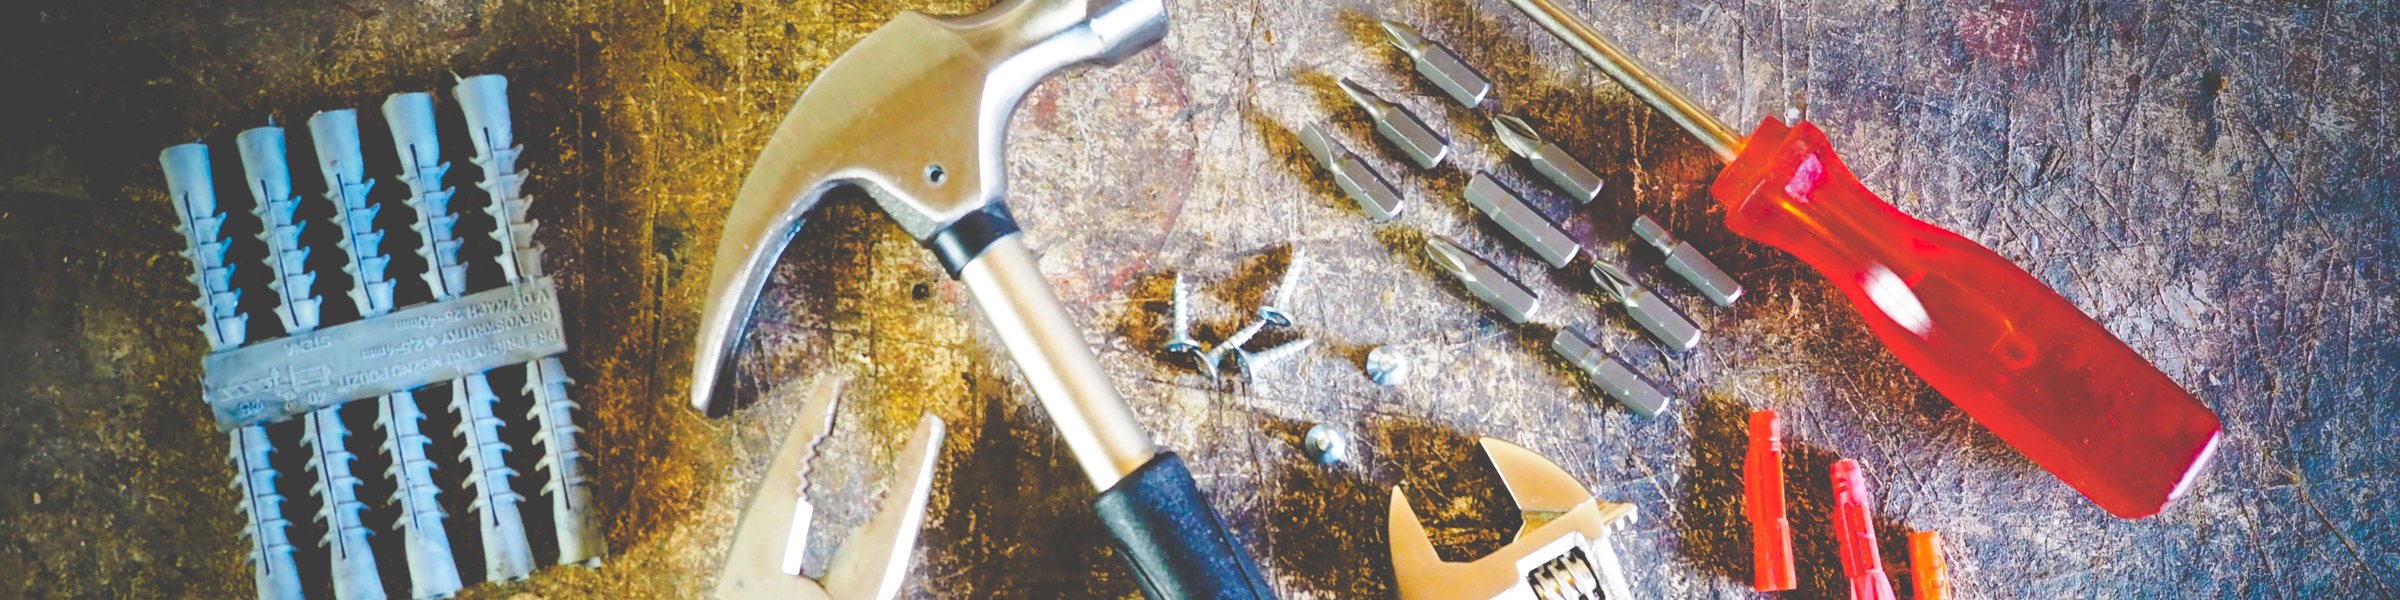 hammer-hand-tools-measuring-tape-175039.jpg